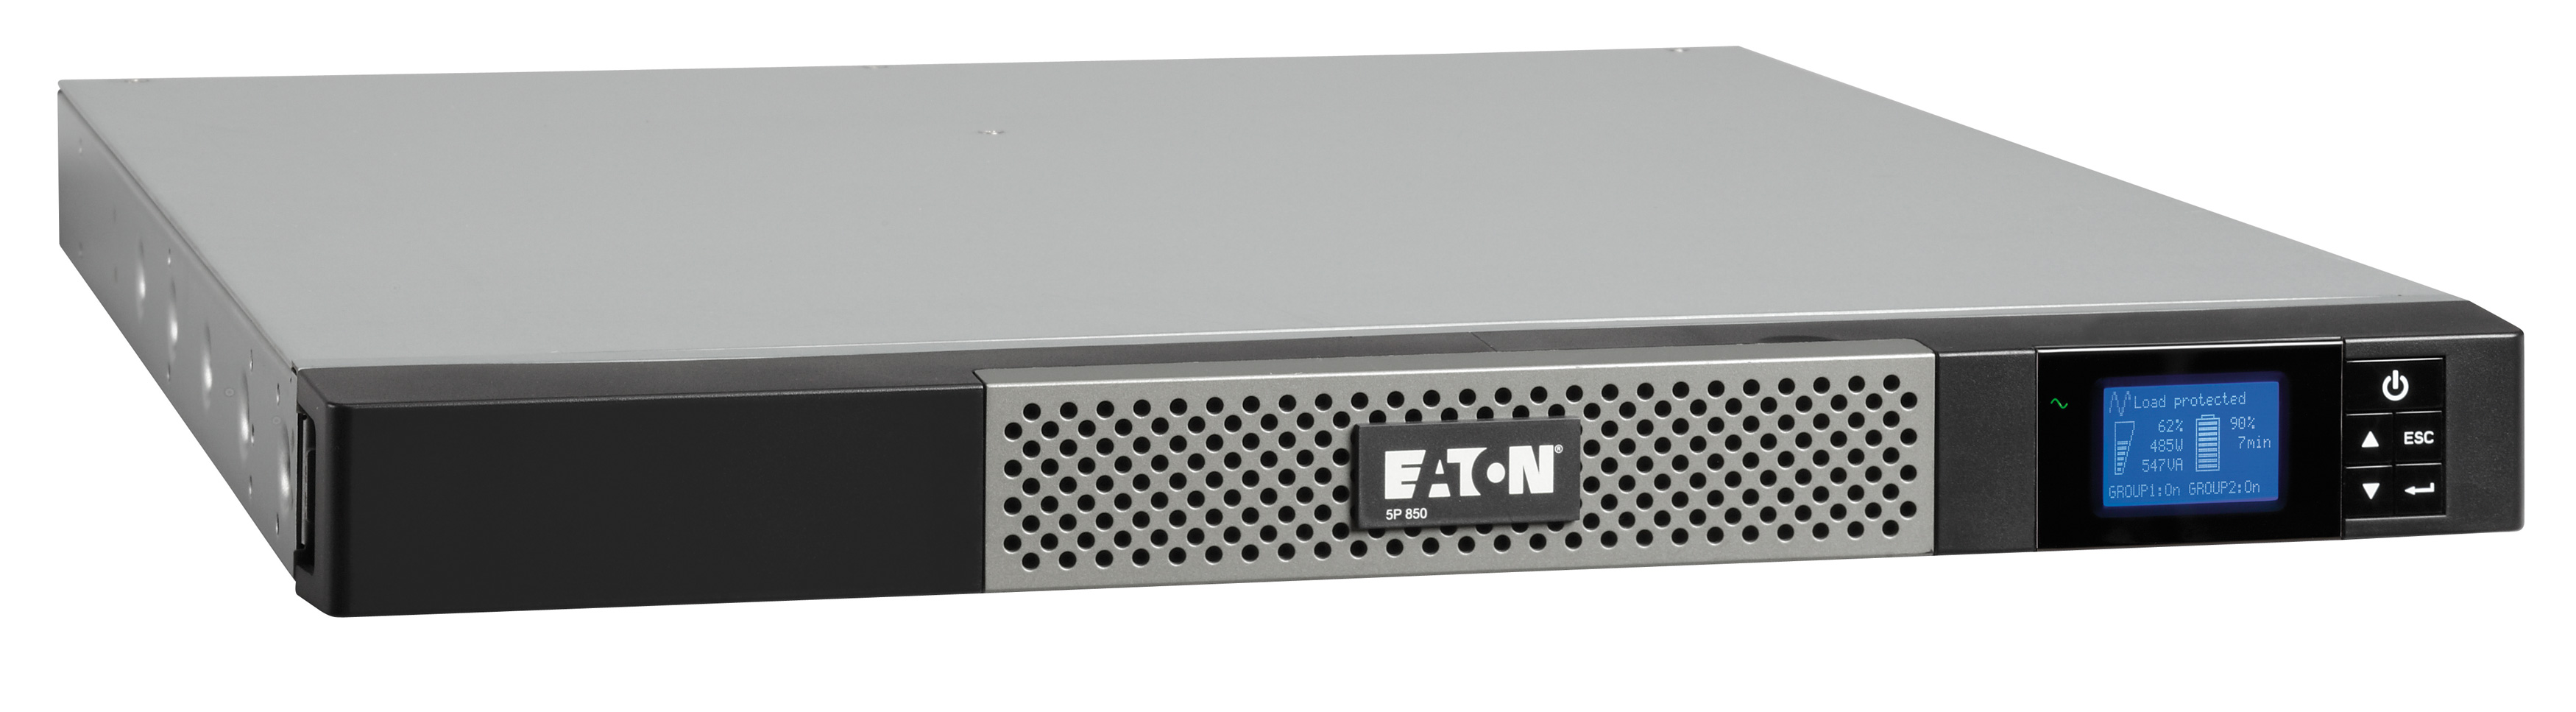 ИБП Eaton 5P 850iR, 850VA, 600W, IEC, розеток - 4, USB, черный (5P850iR)